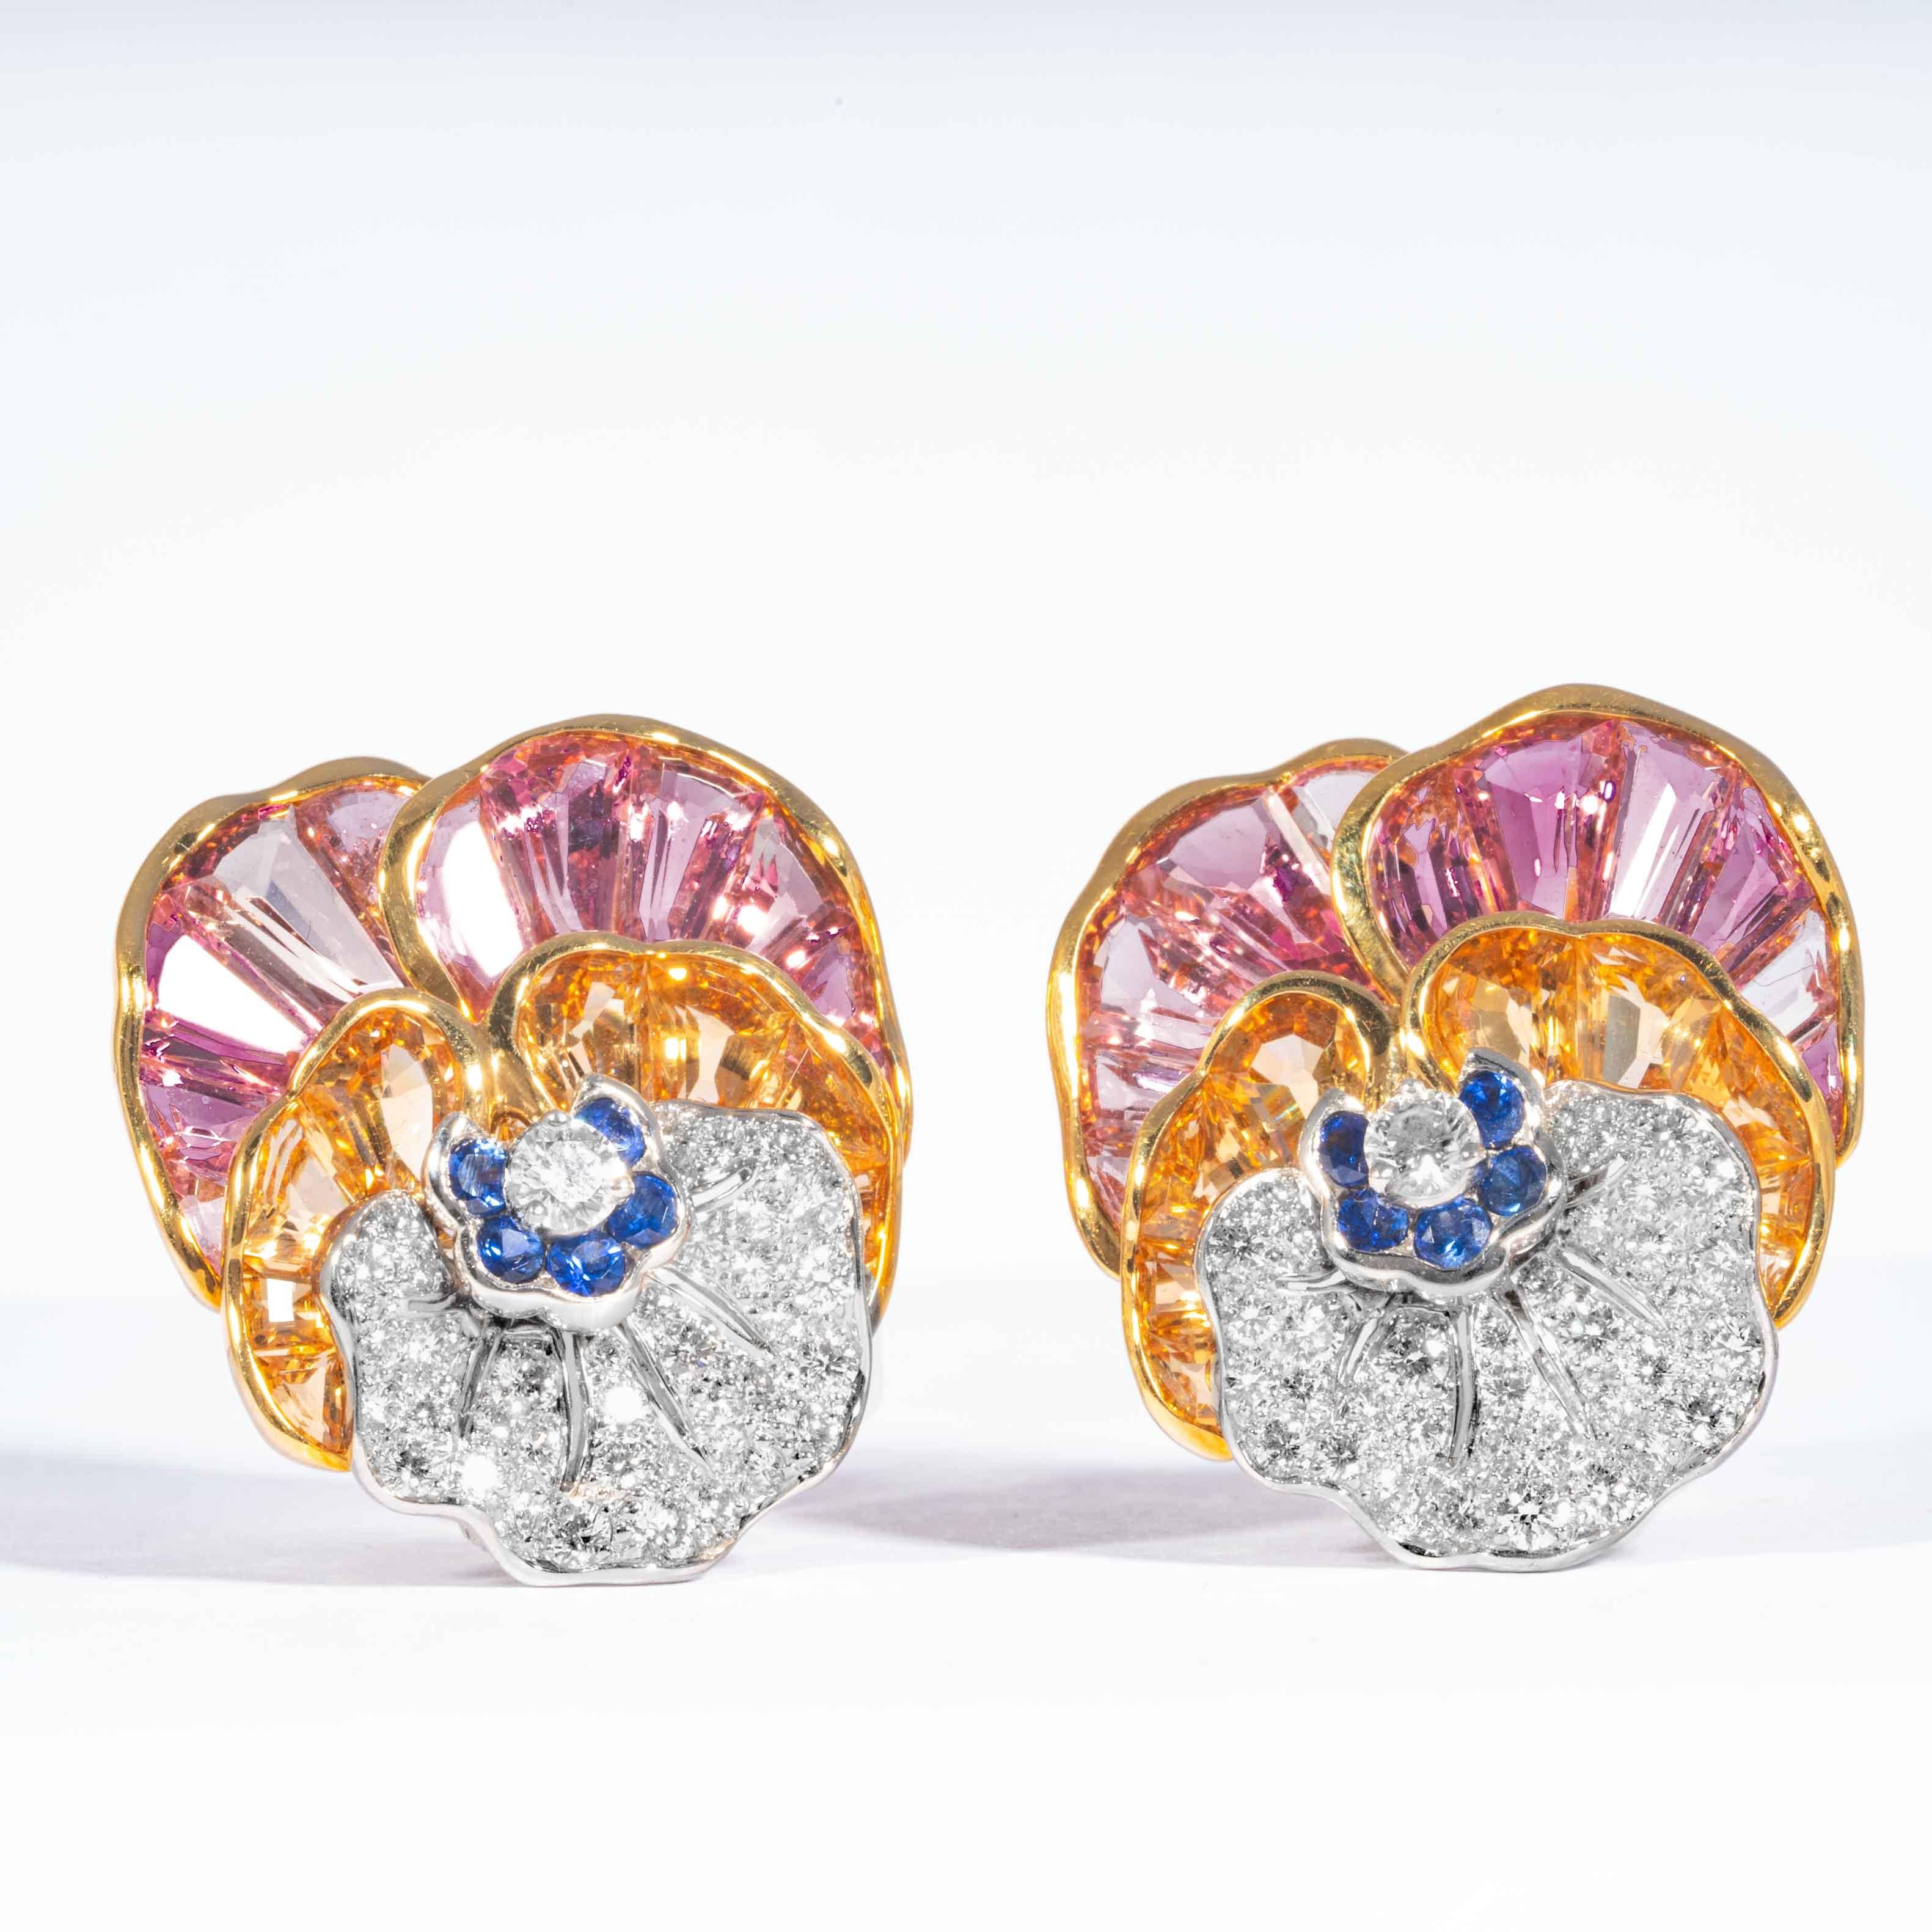 Diese unverwechselbaren Ohrringe vereinen rosa Topas, gelblich-orangefarbene Citrine, blaue Saphire und funkelnde weiße Diamanten in einem wunderschönen Farbspiel zu einer einzigartigen Wiedergabe des ikonischen Stiefmütterchen-Designs von Oscar